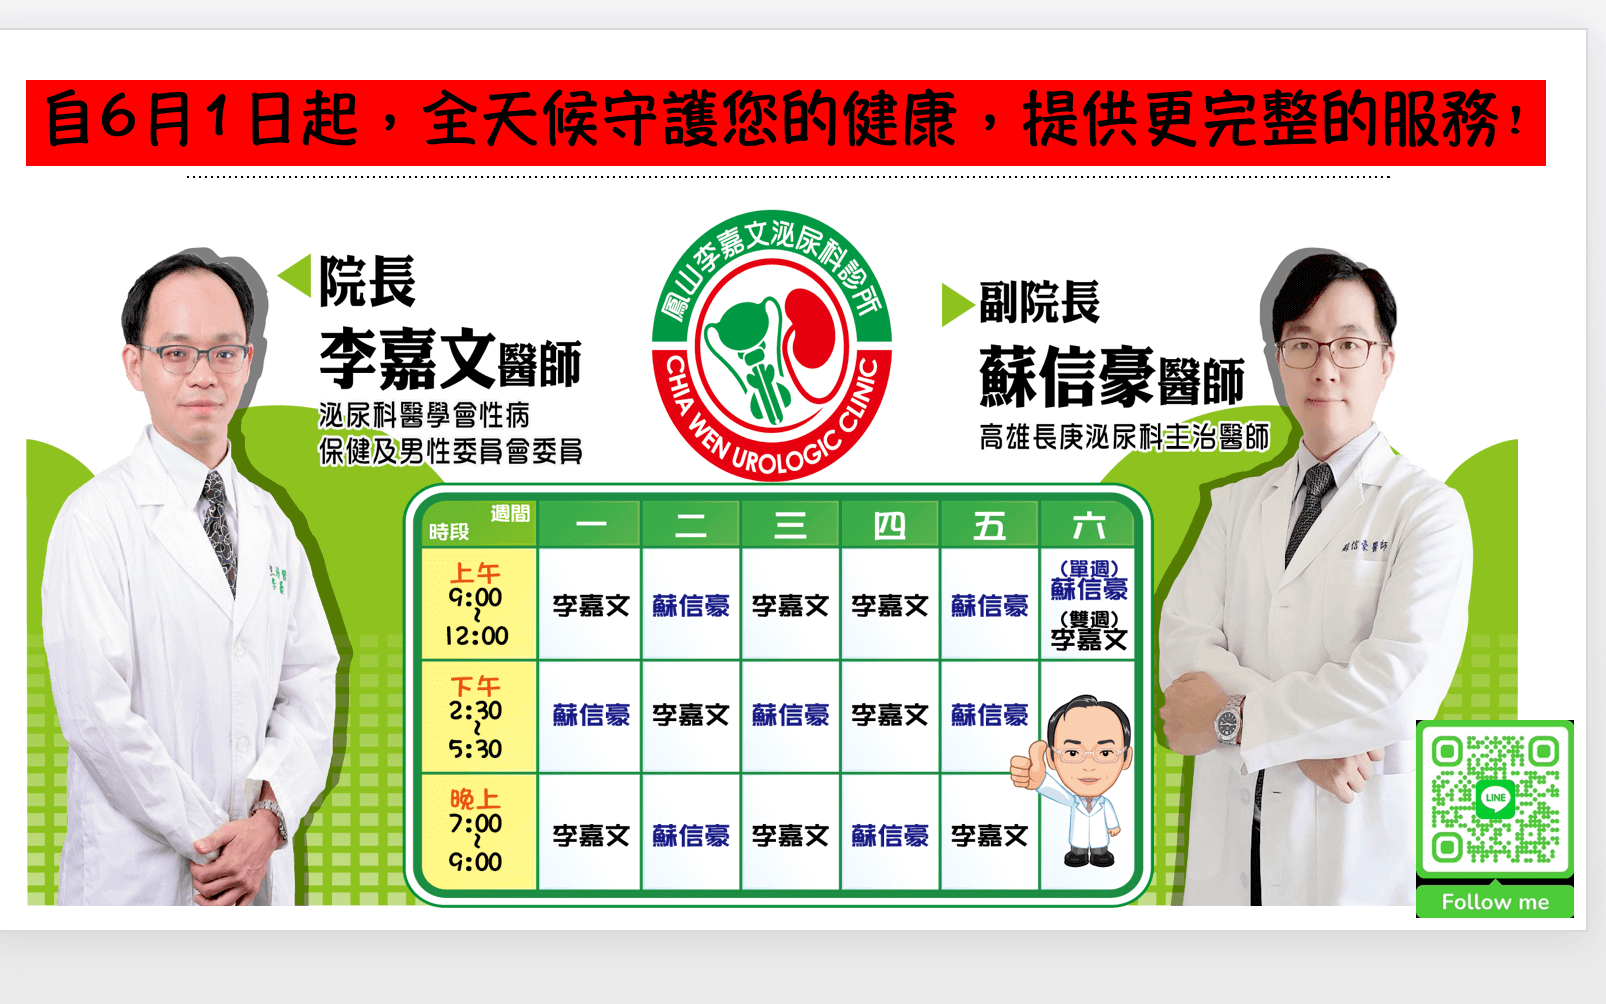 鳳山李嘉文泌尿科診所的最新公告圖片